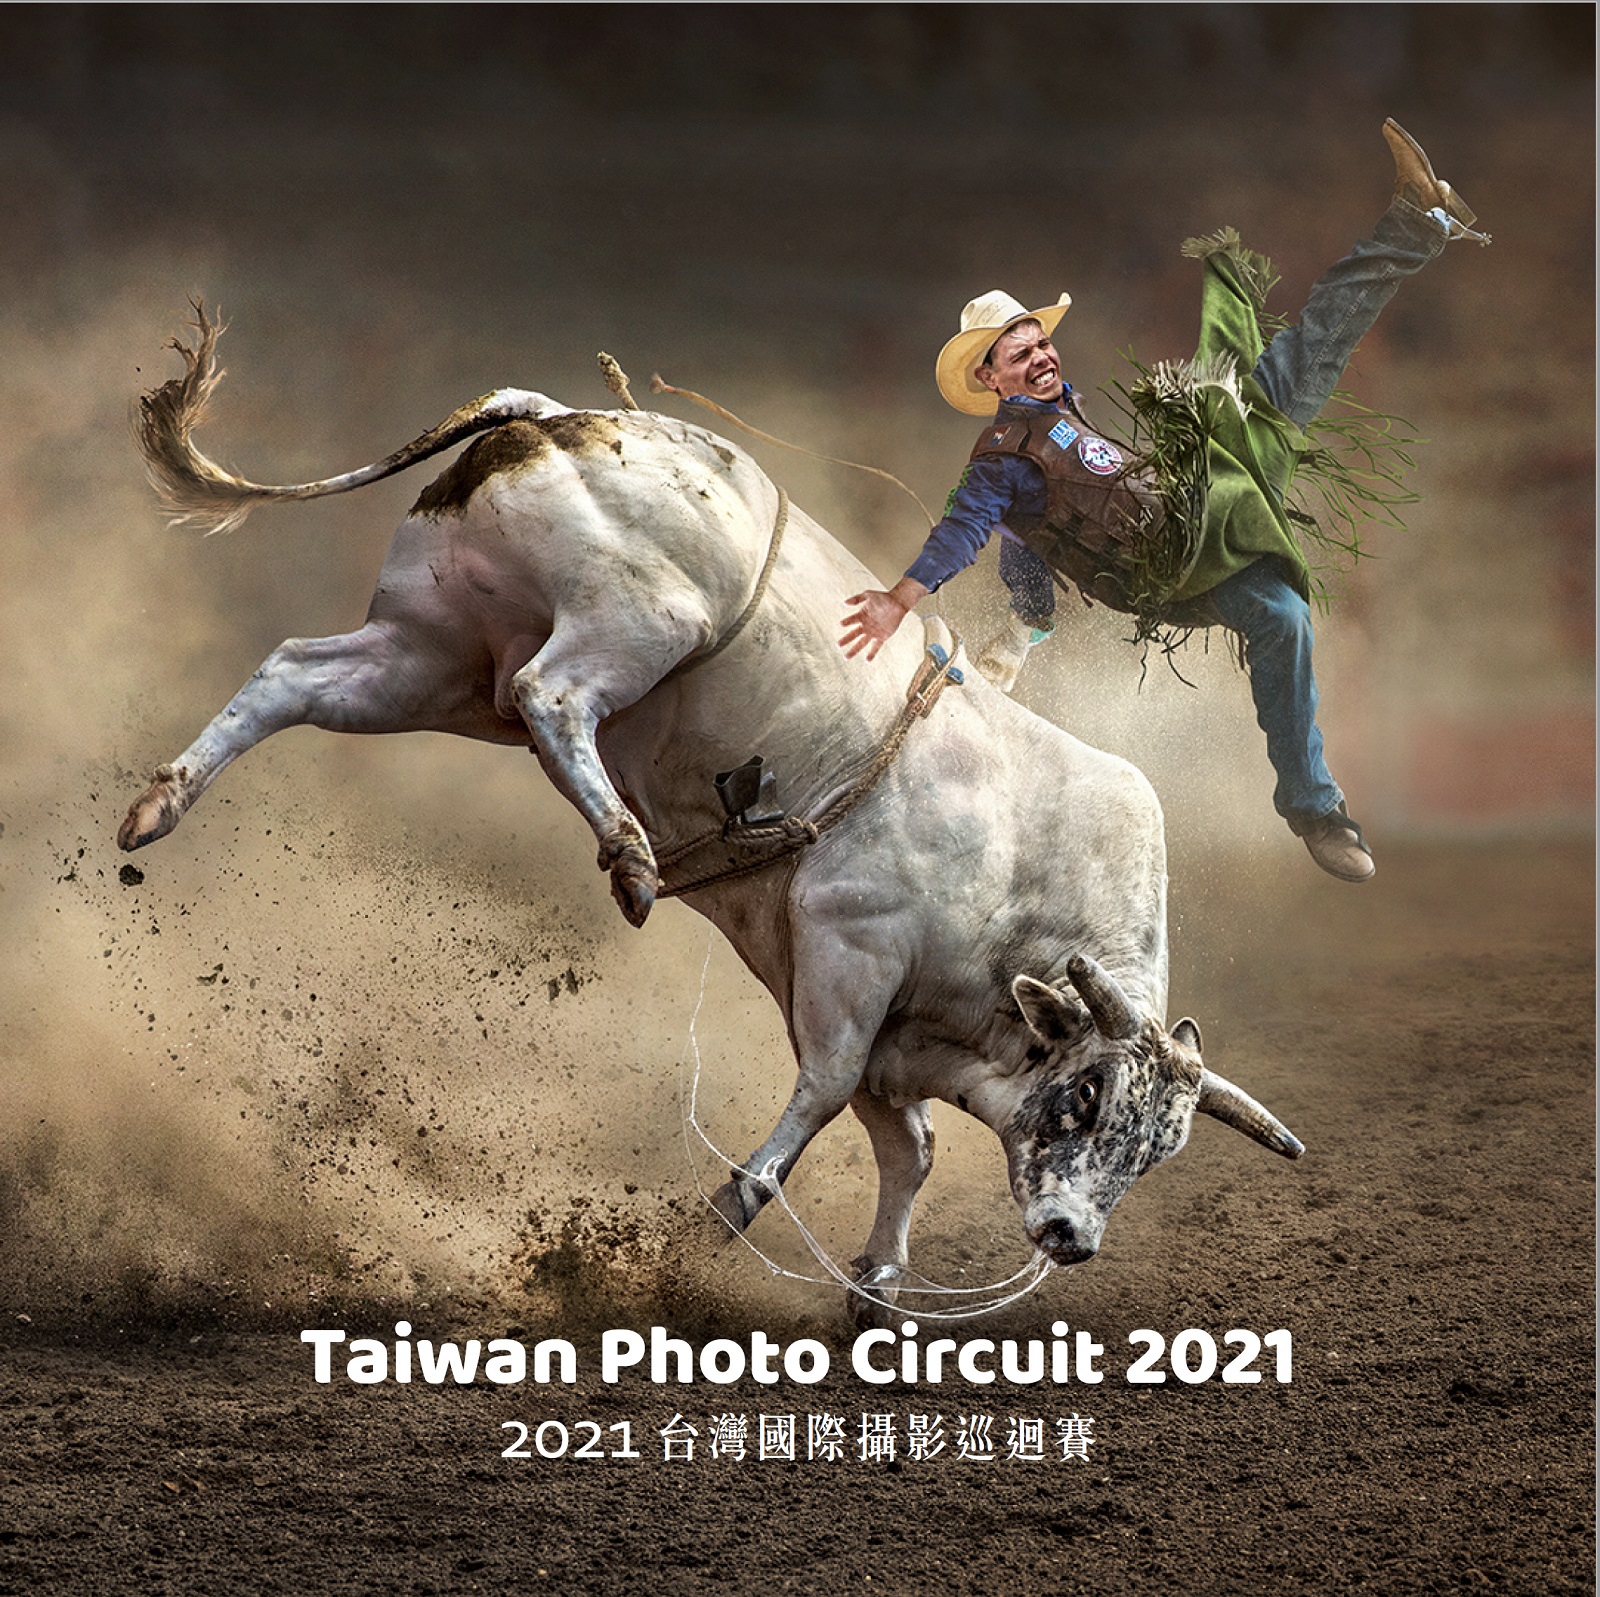 2021台灣國際攝影巡迴賽 沙龍專輯封面.jpg